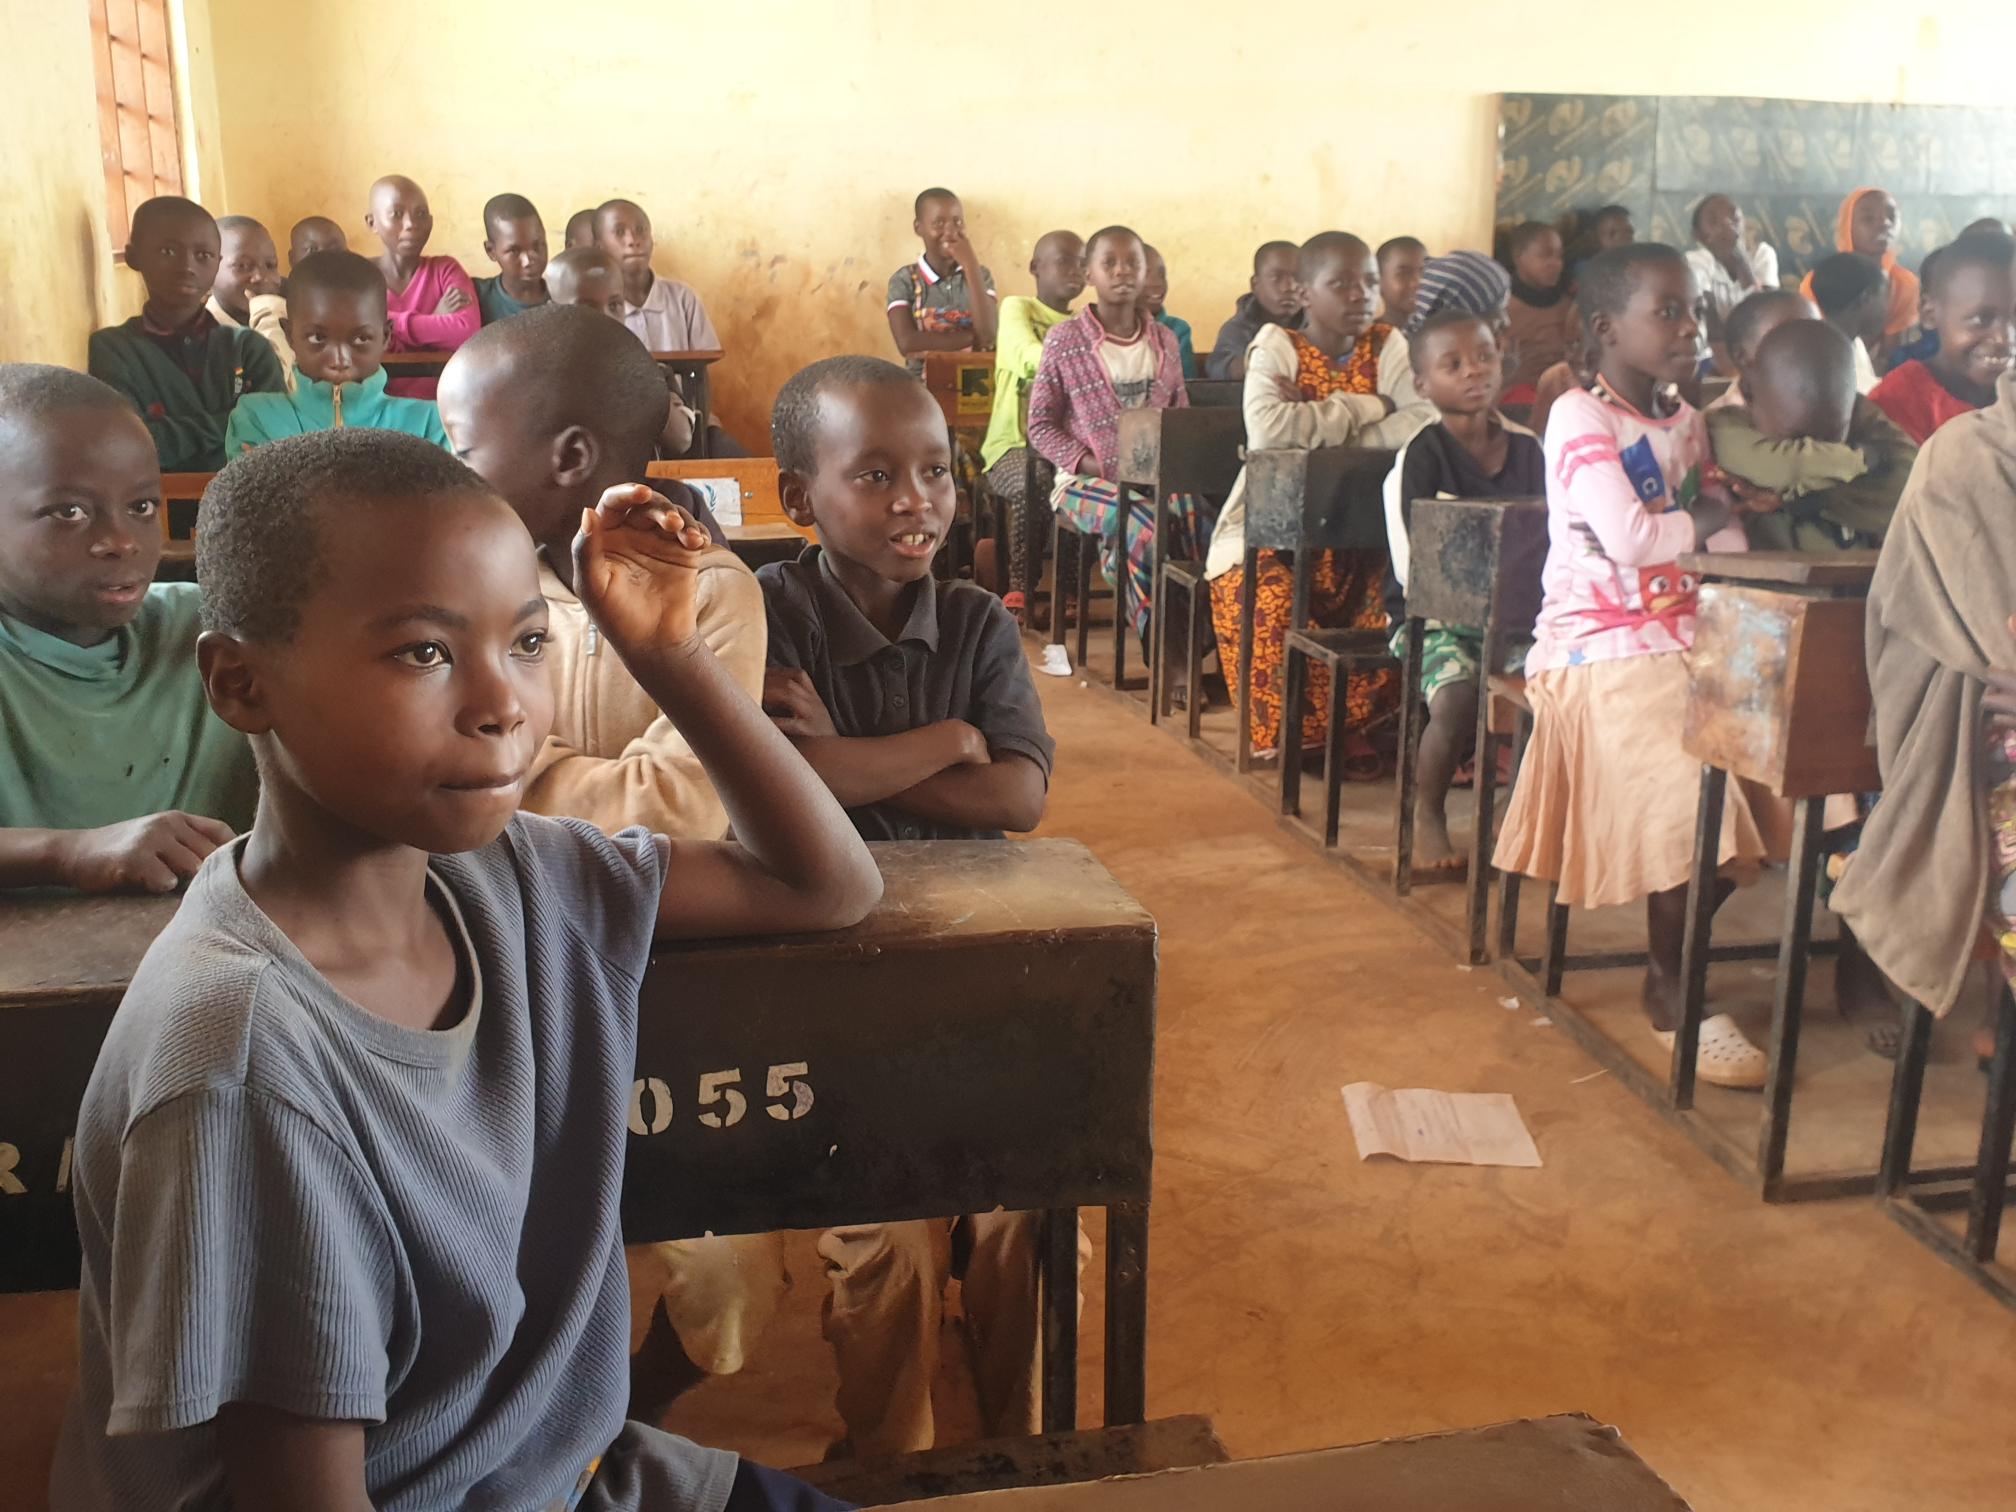 ProFuturo firma un acuerdo con IRC para ampliar su programa de educación digital en contextos de emergencia en Tanzania